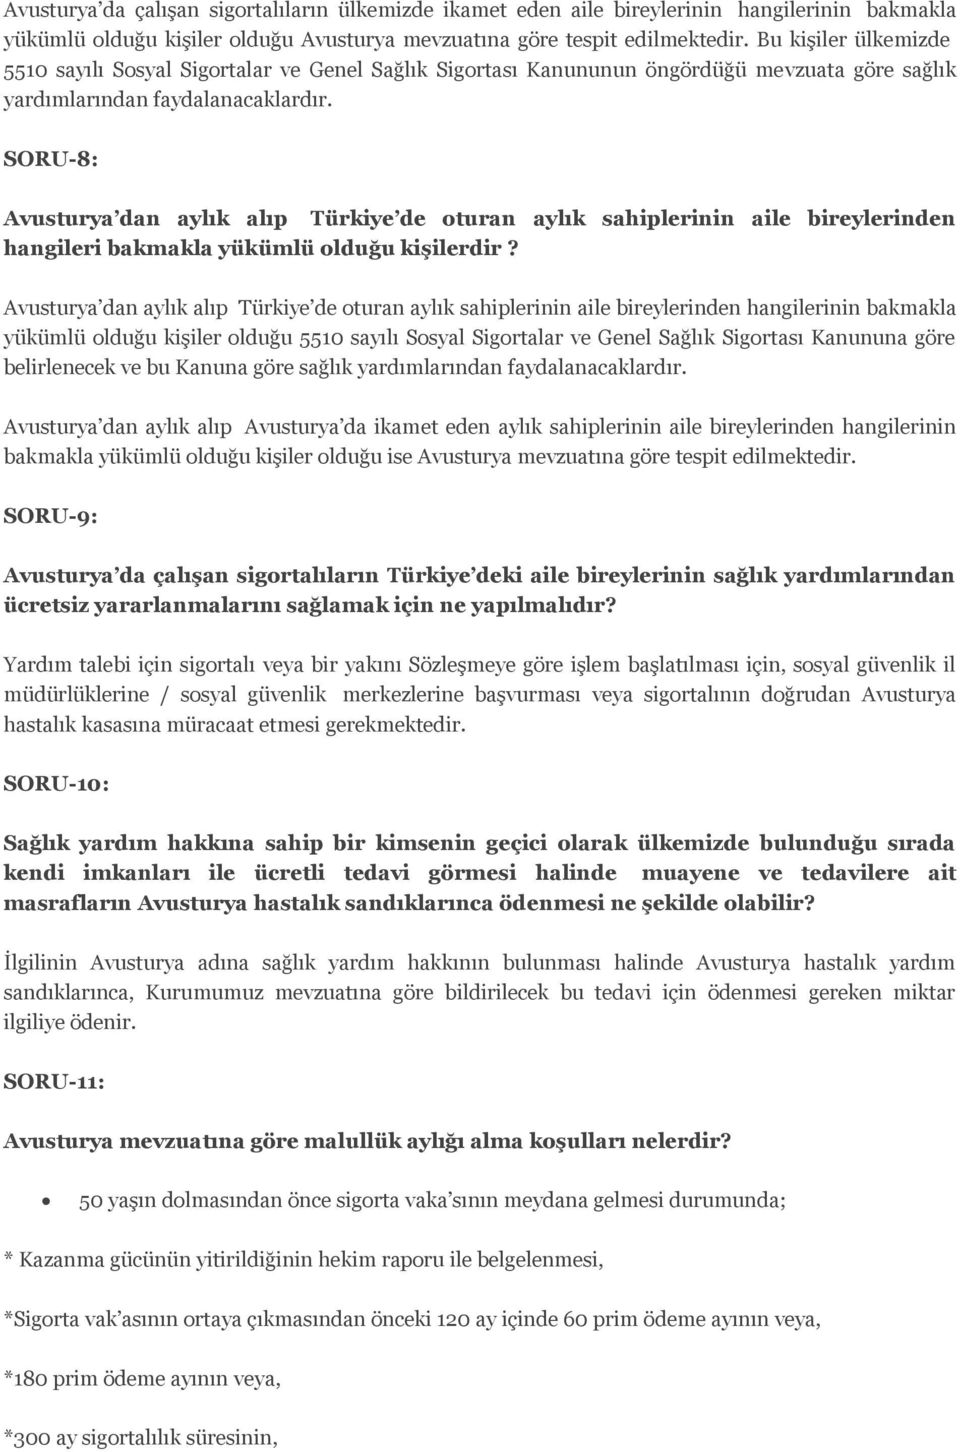 SORU-8: Avusturya dan aylık alıp Türkiye de oturan aylık sahiplerinin aile bireylerinden hangileri bakmakla yükümlü olduğu kişilerdir?